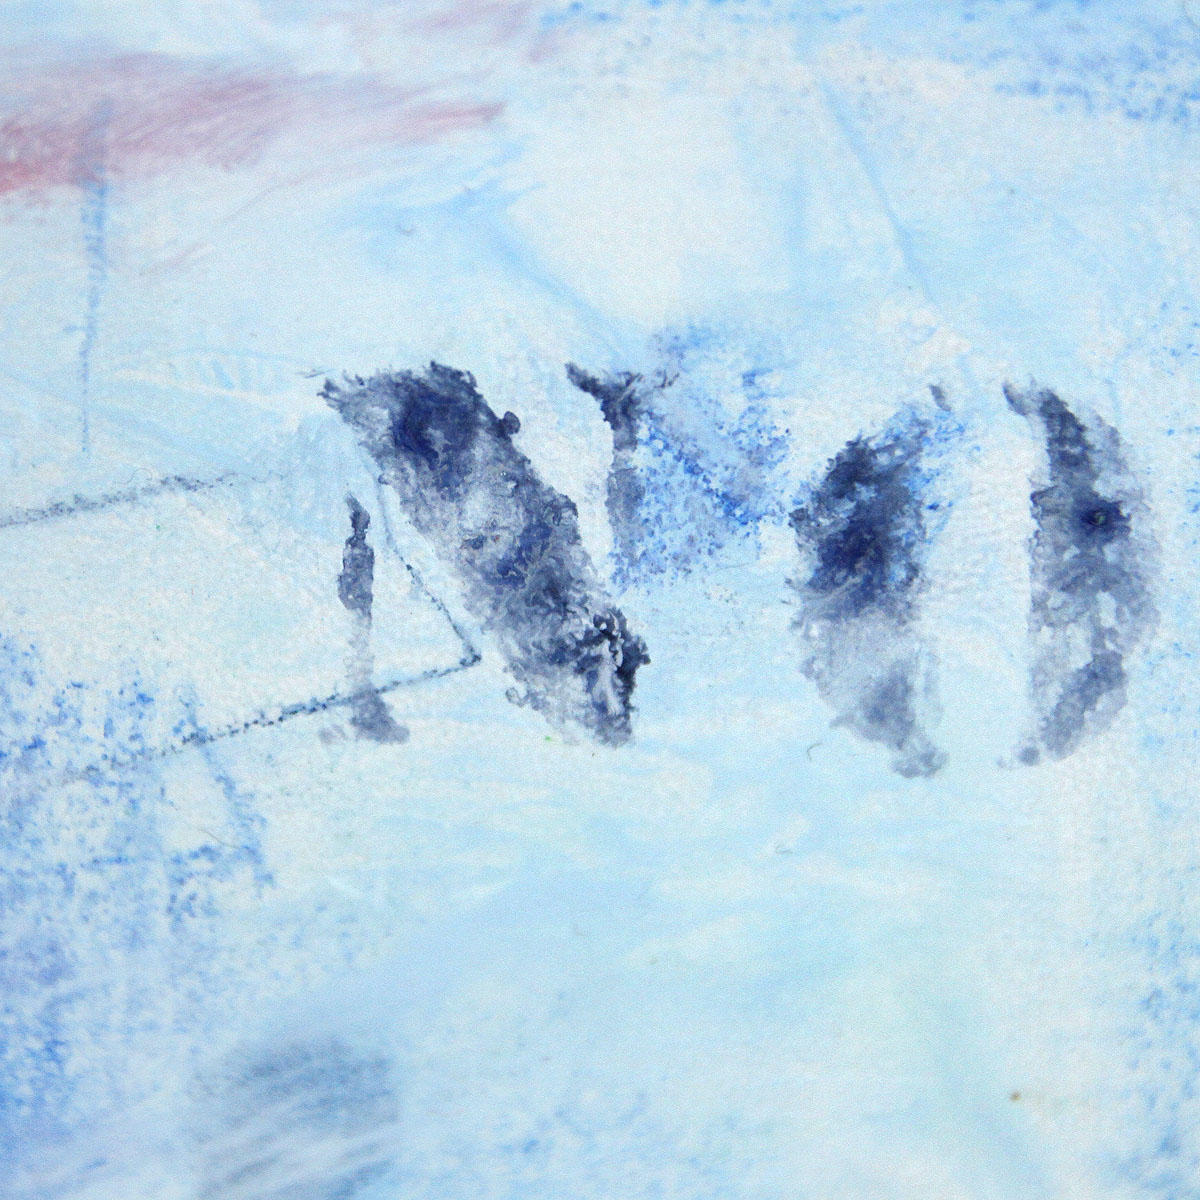 Zeitgenössische Malerei von Uwe Fehrmann: "No" (A)